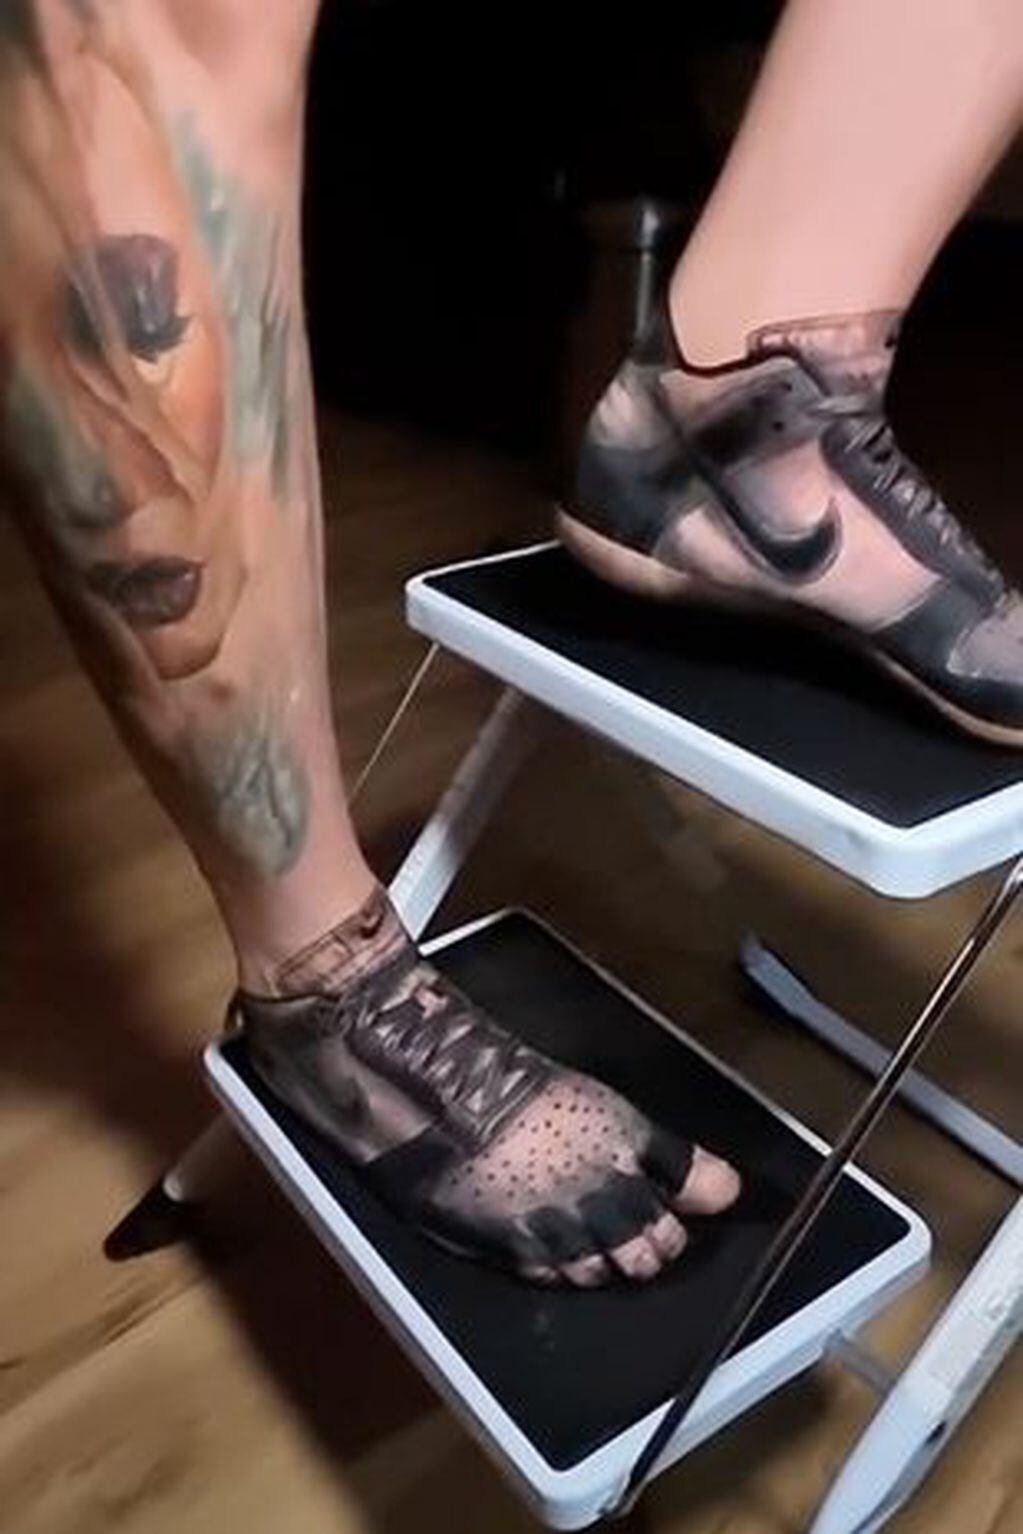 Gunther le dibujó al hombre unas zapatillas deportivas Nike. Foto: Web